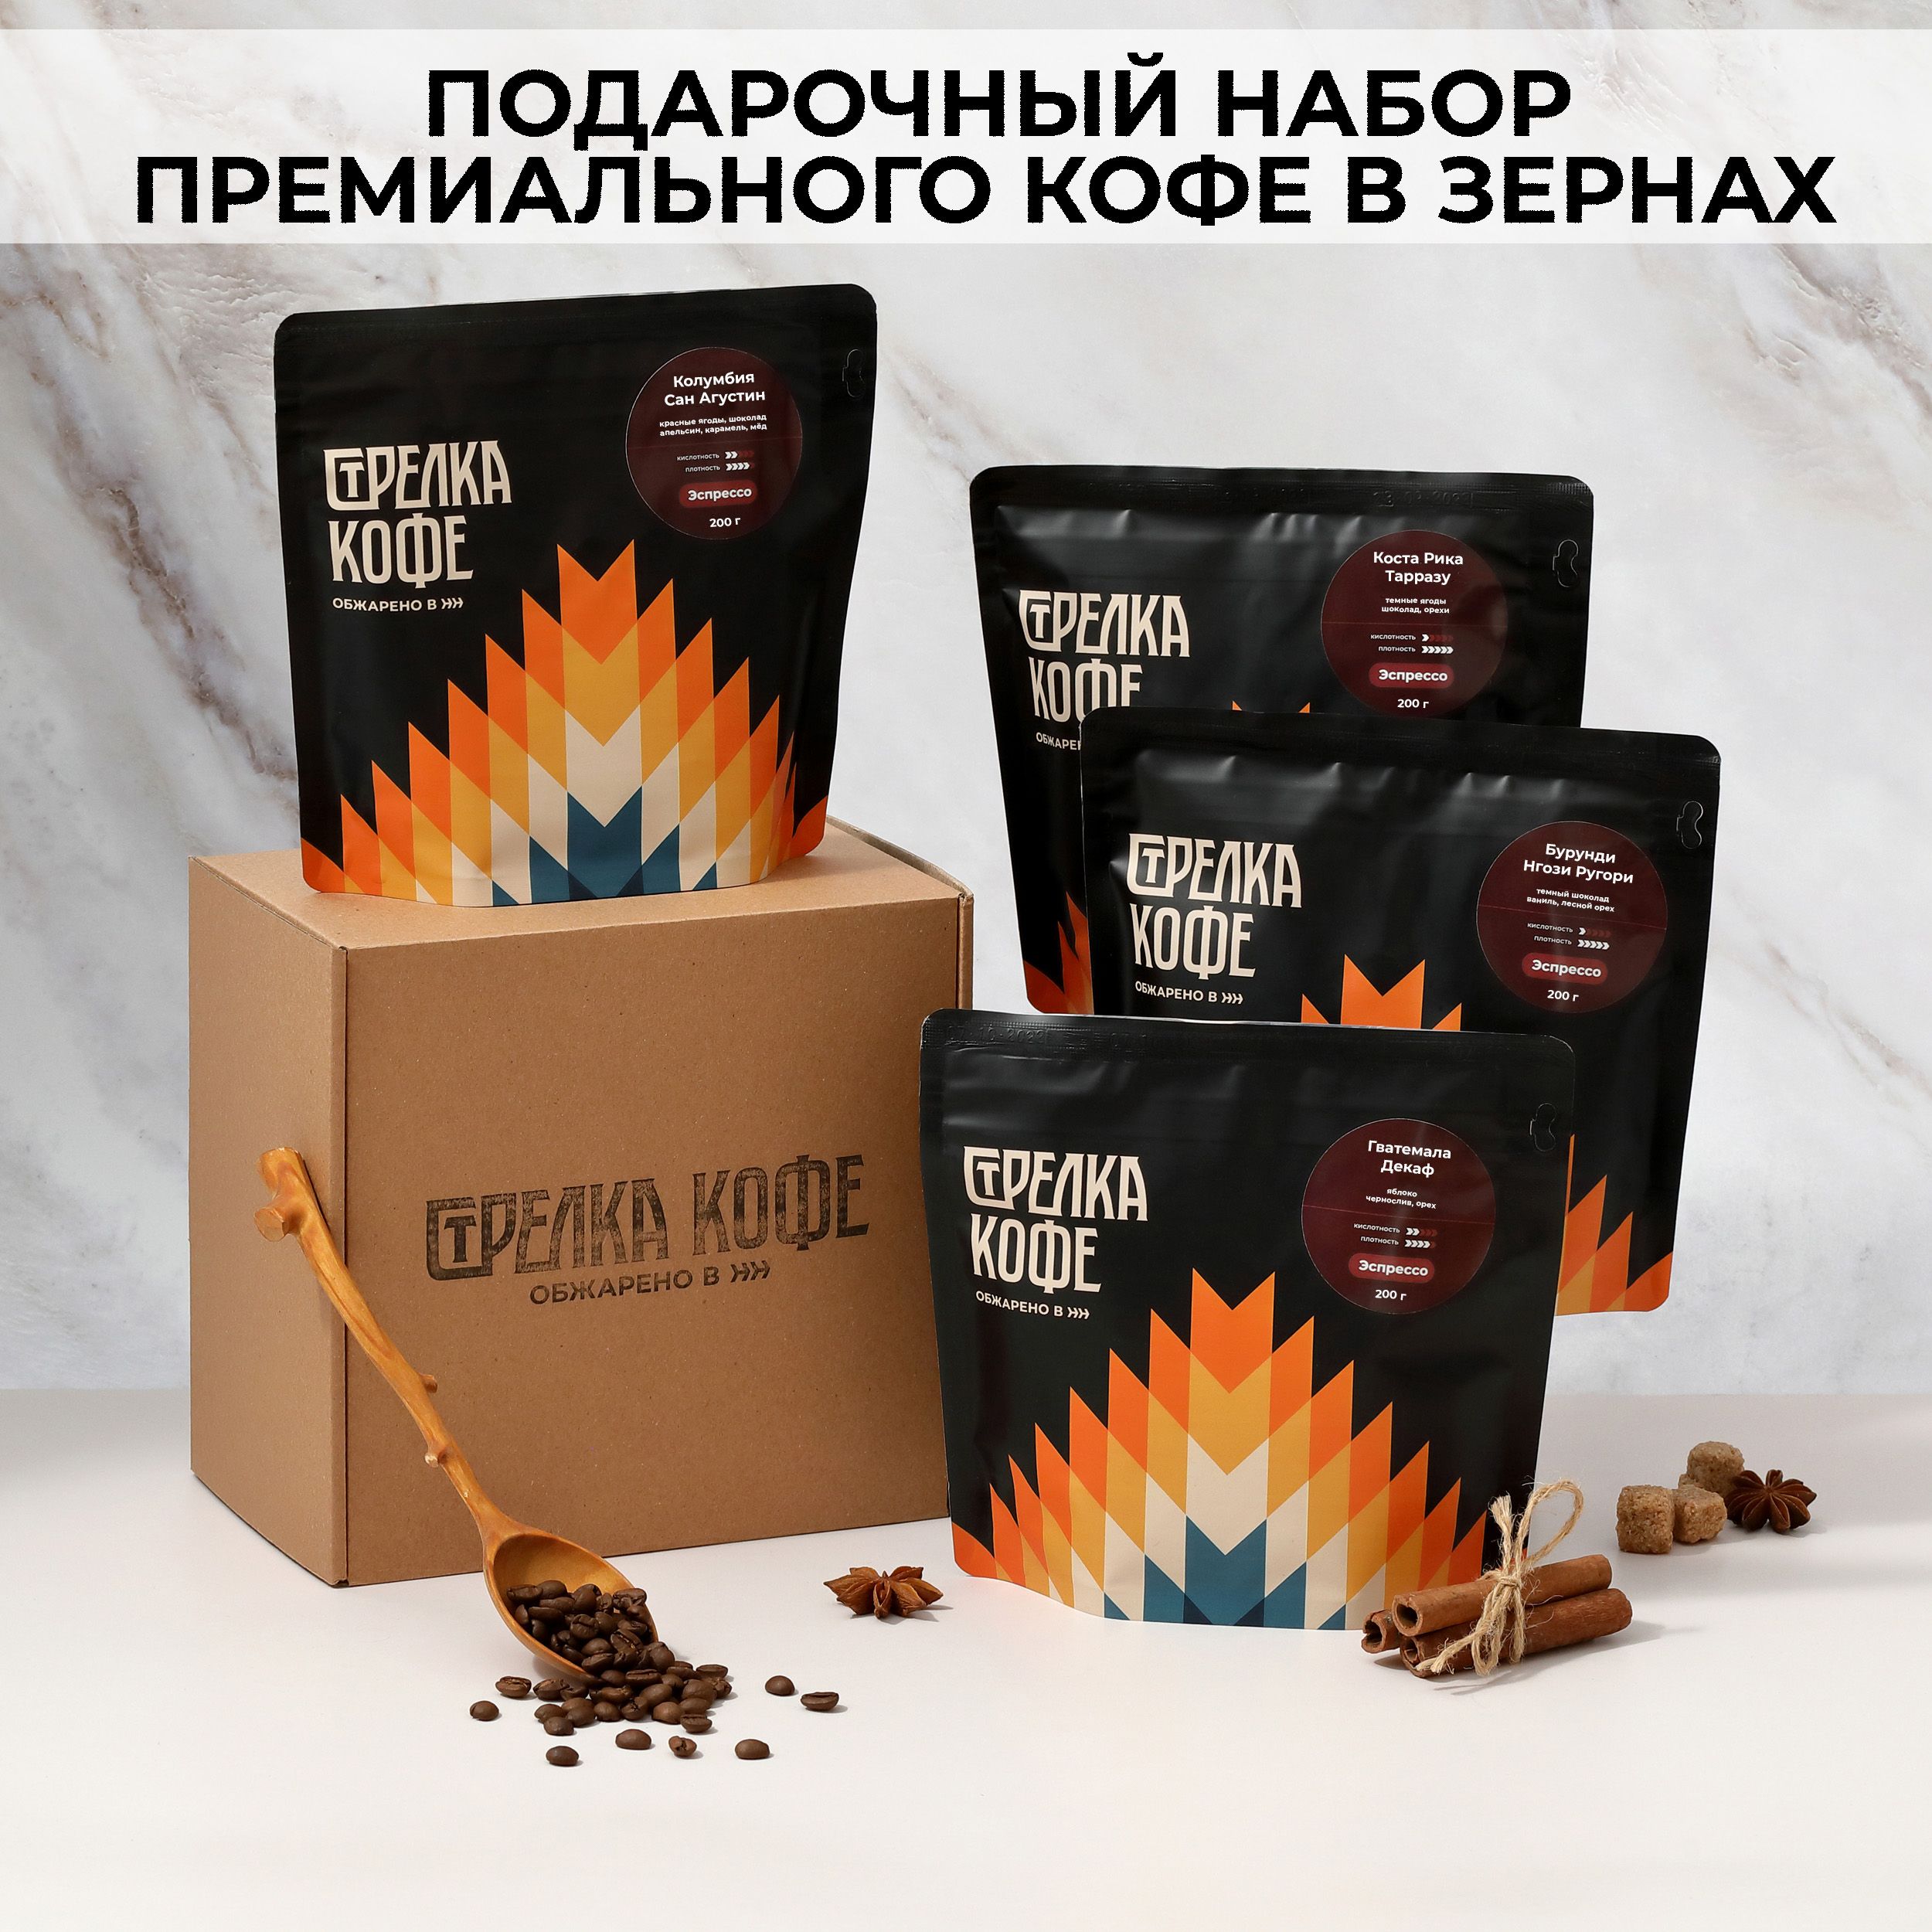 Подарочный набор кофе в зернах Стрелка кофе 4 классических вкуса, 800 г